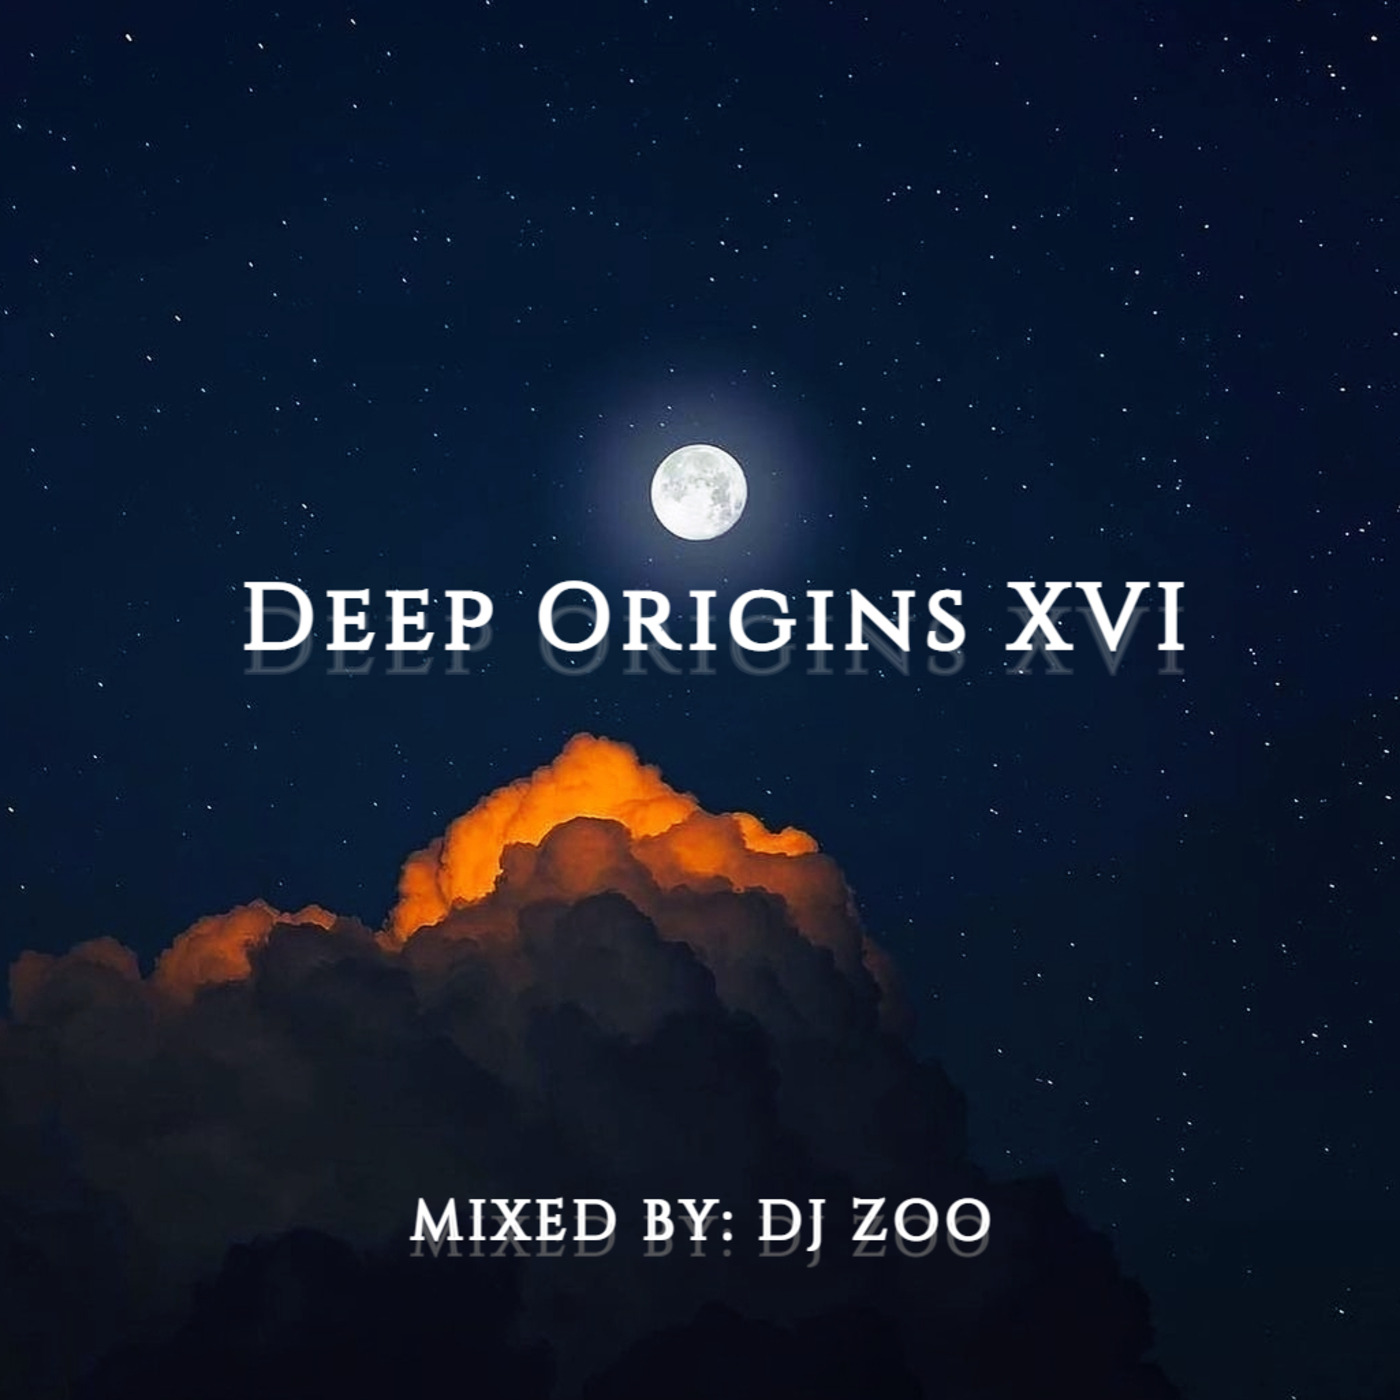 Episode 29: Dj Zoo - Deep Origins XVI